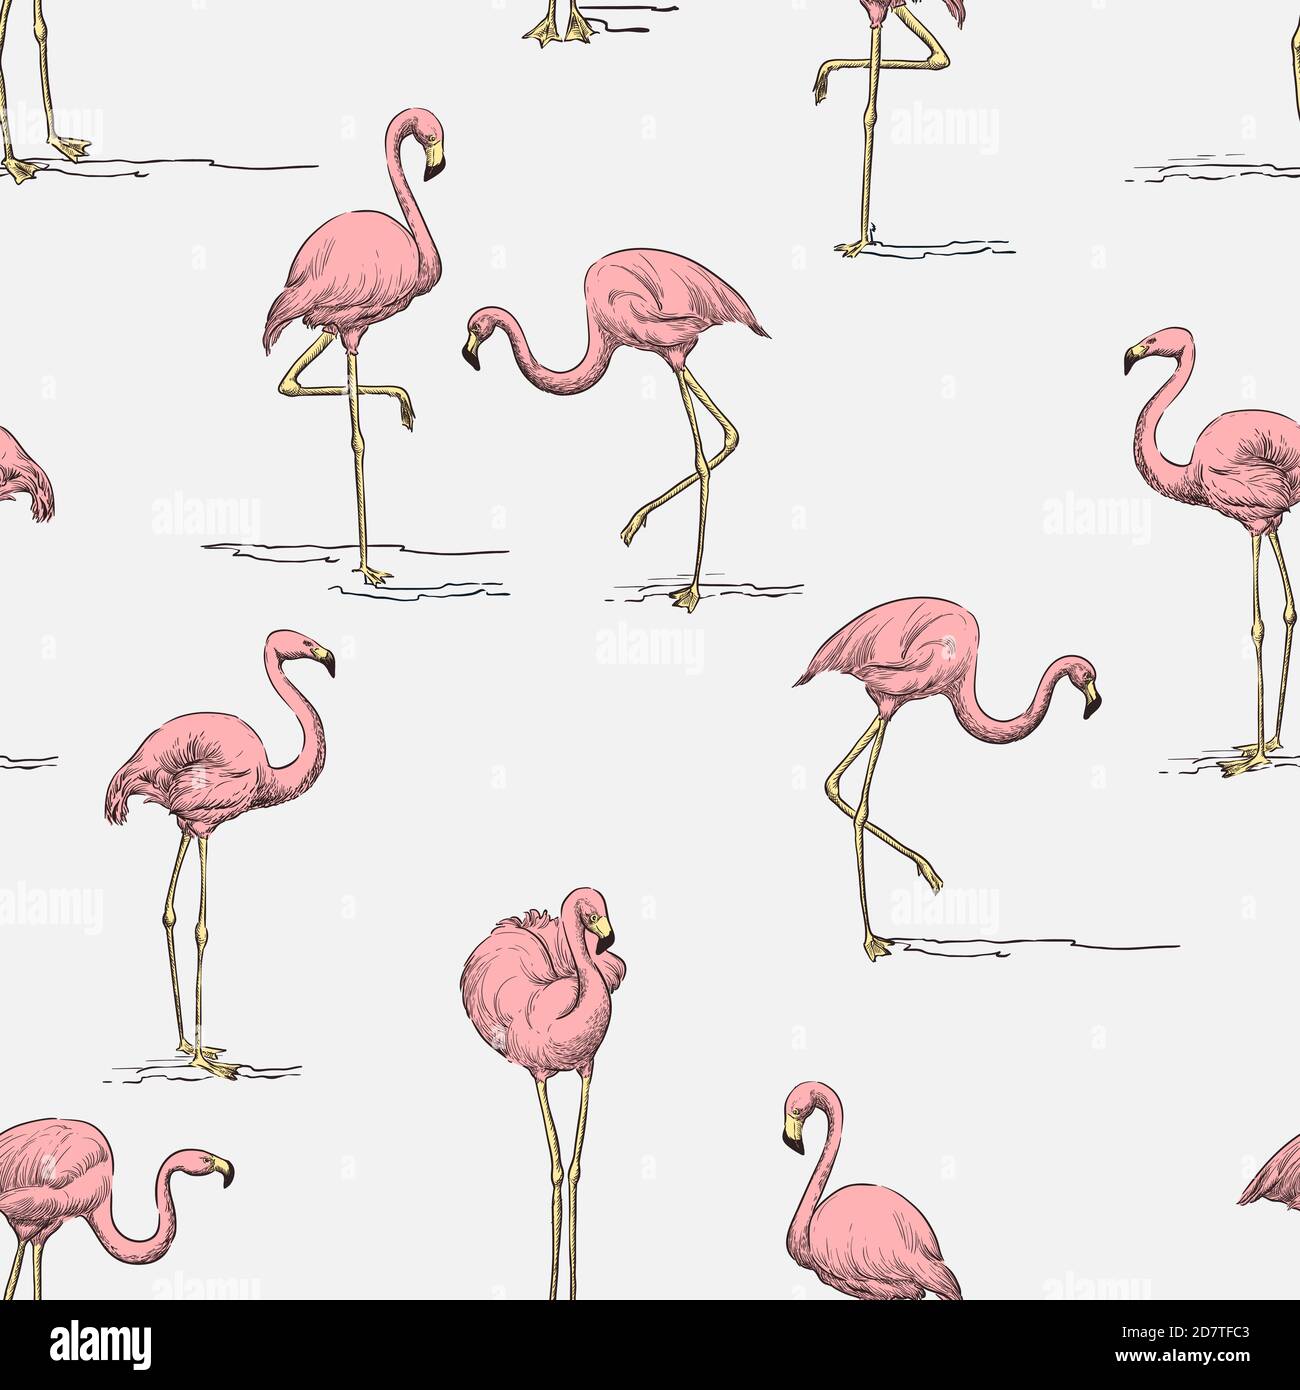 Tropisches Nahtmuster. Rosa Flamingo auf weißem Hintergrund. Vektorfarbe handgezeichnete Skizze Illustration. Sommerliches Stoffdesign, Geschenkpapier, Trend Stock Vektor